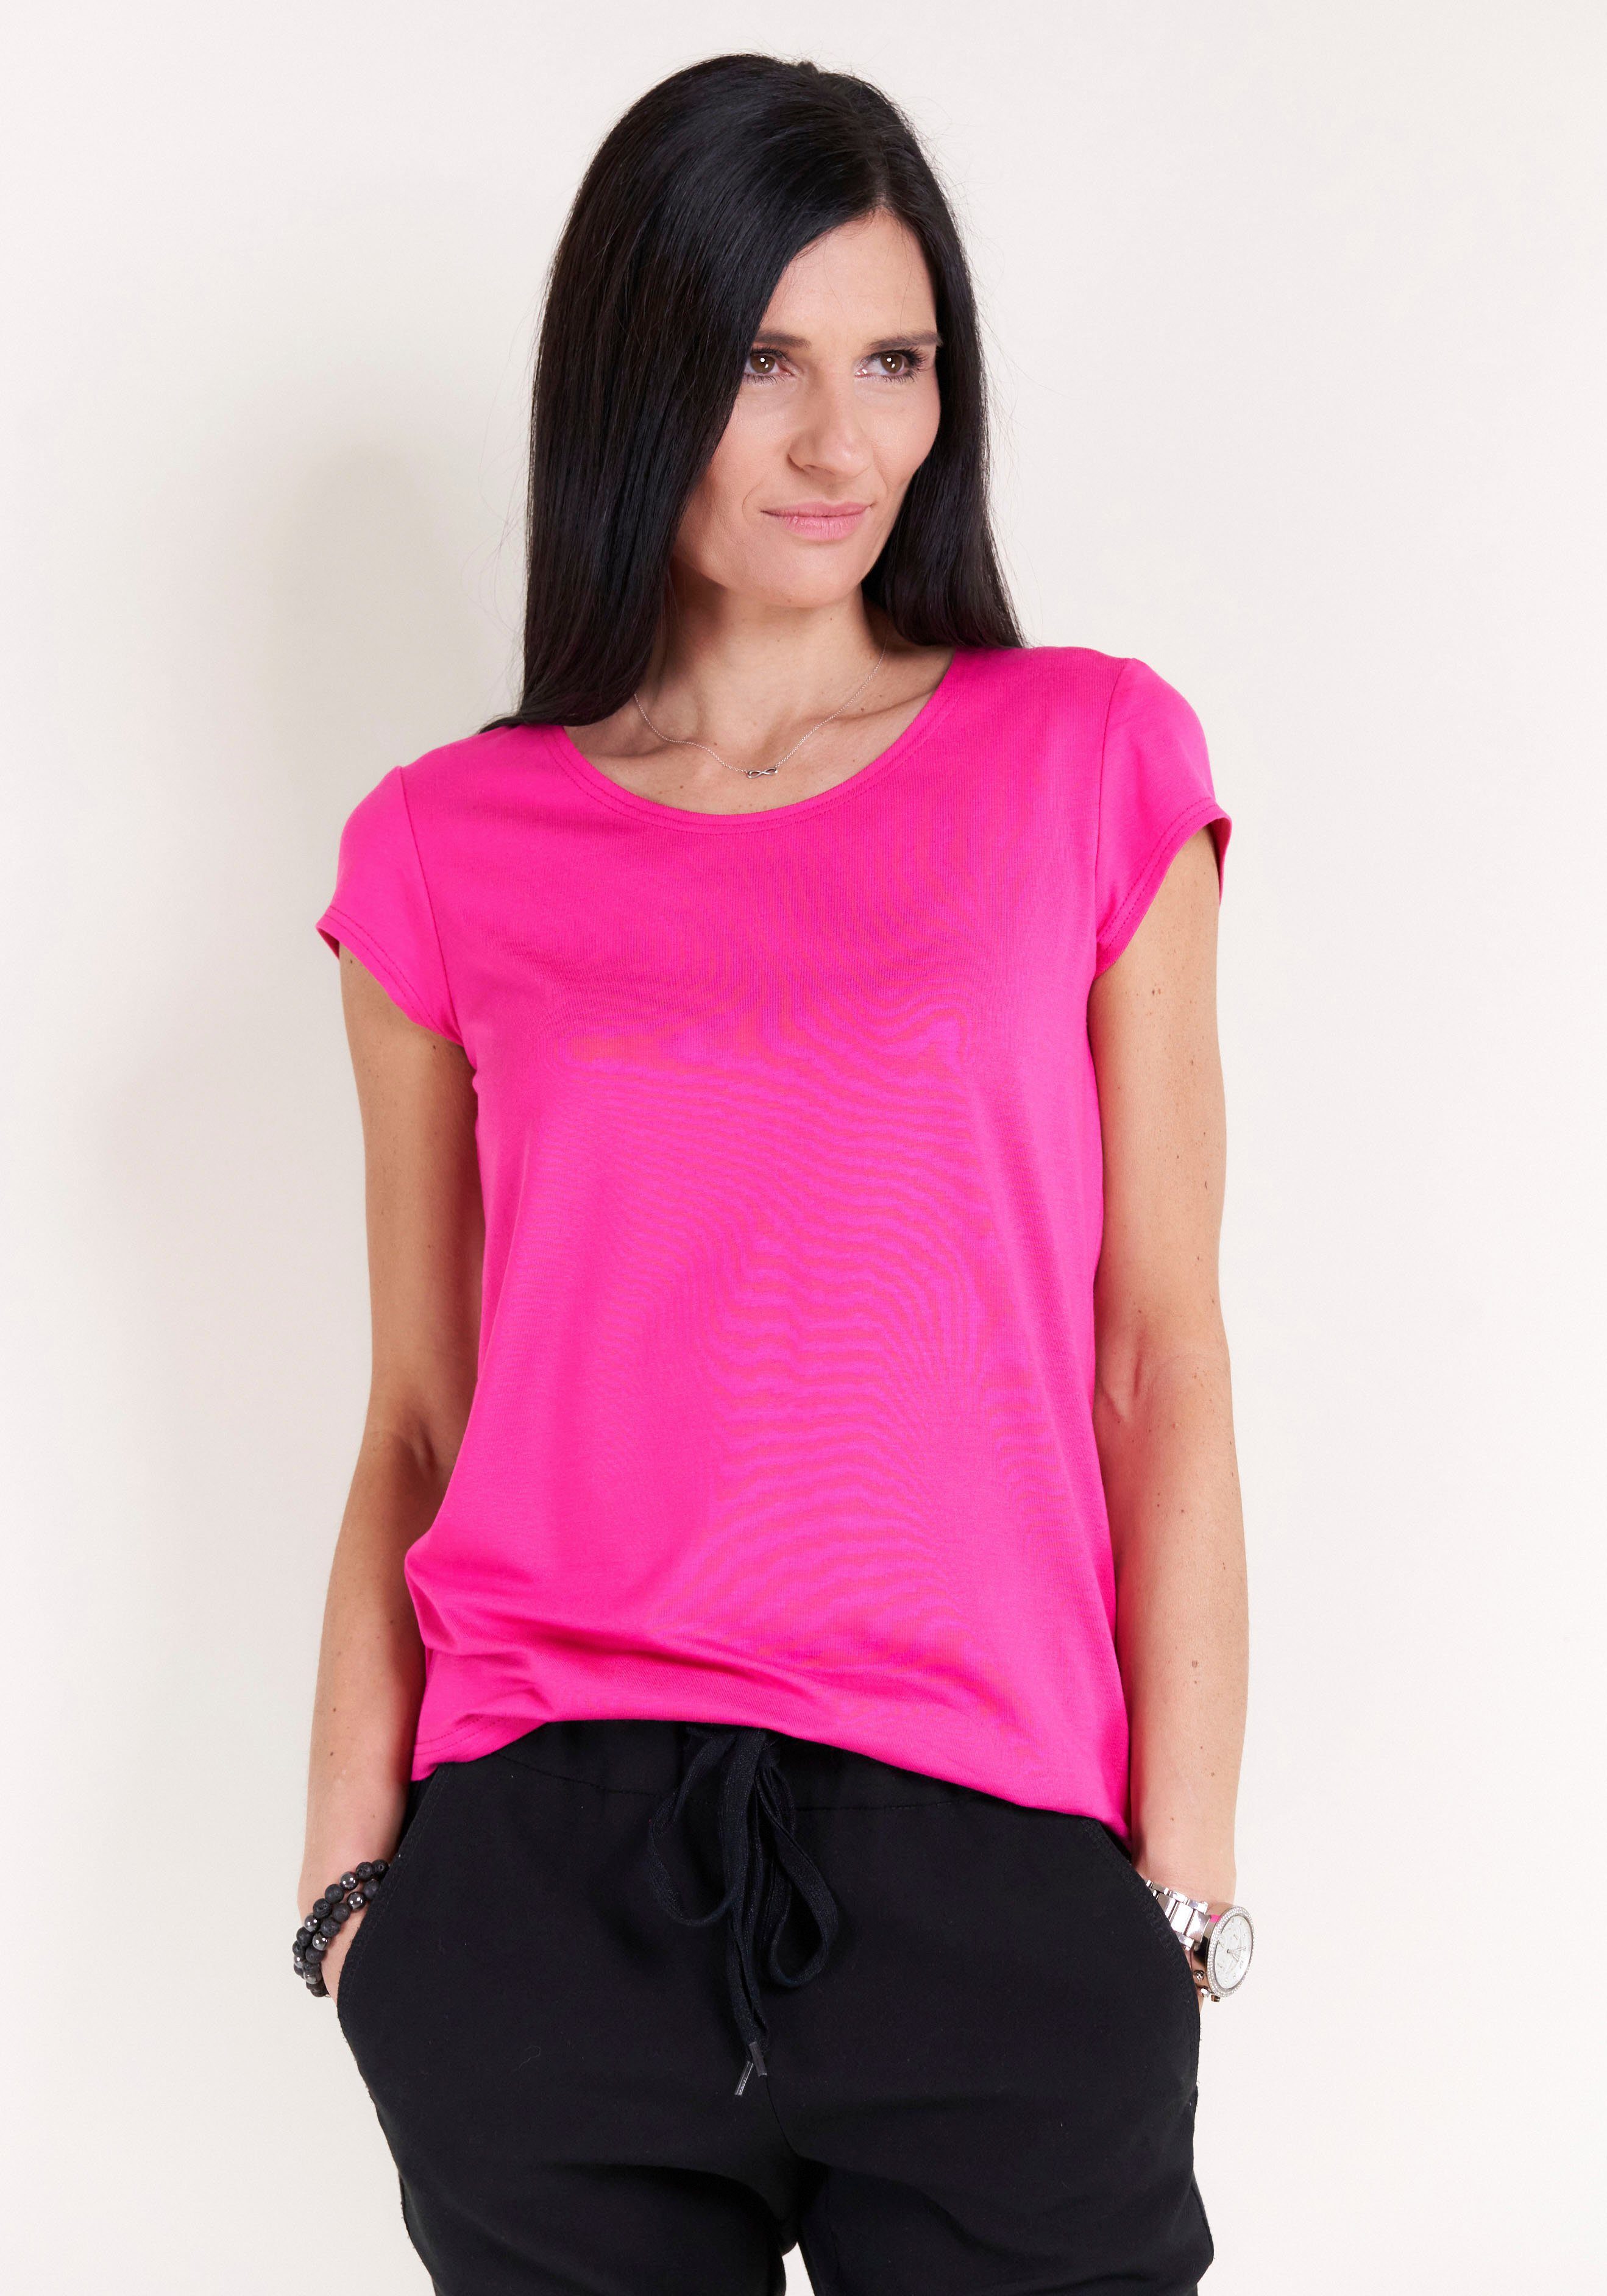 Seidel Moden T-Shirt Seidel Moden mit Kappenärmel, MADE IN GERMANY pink